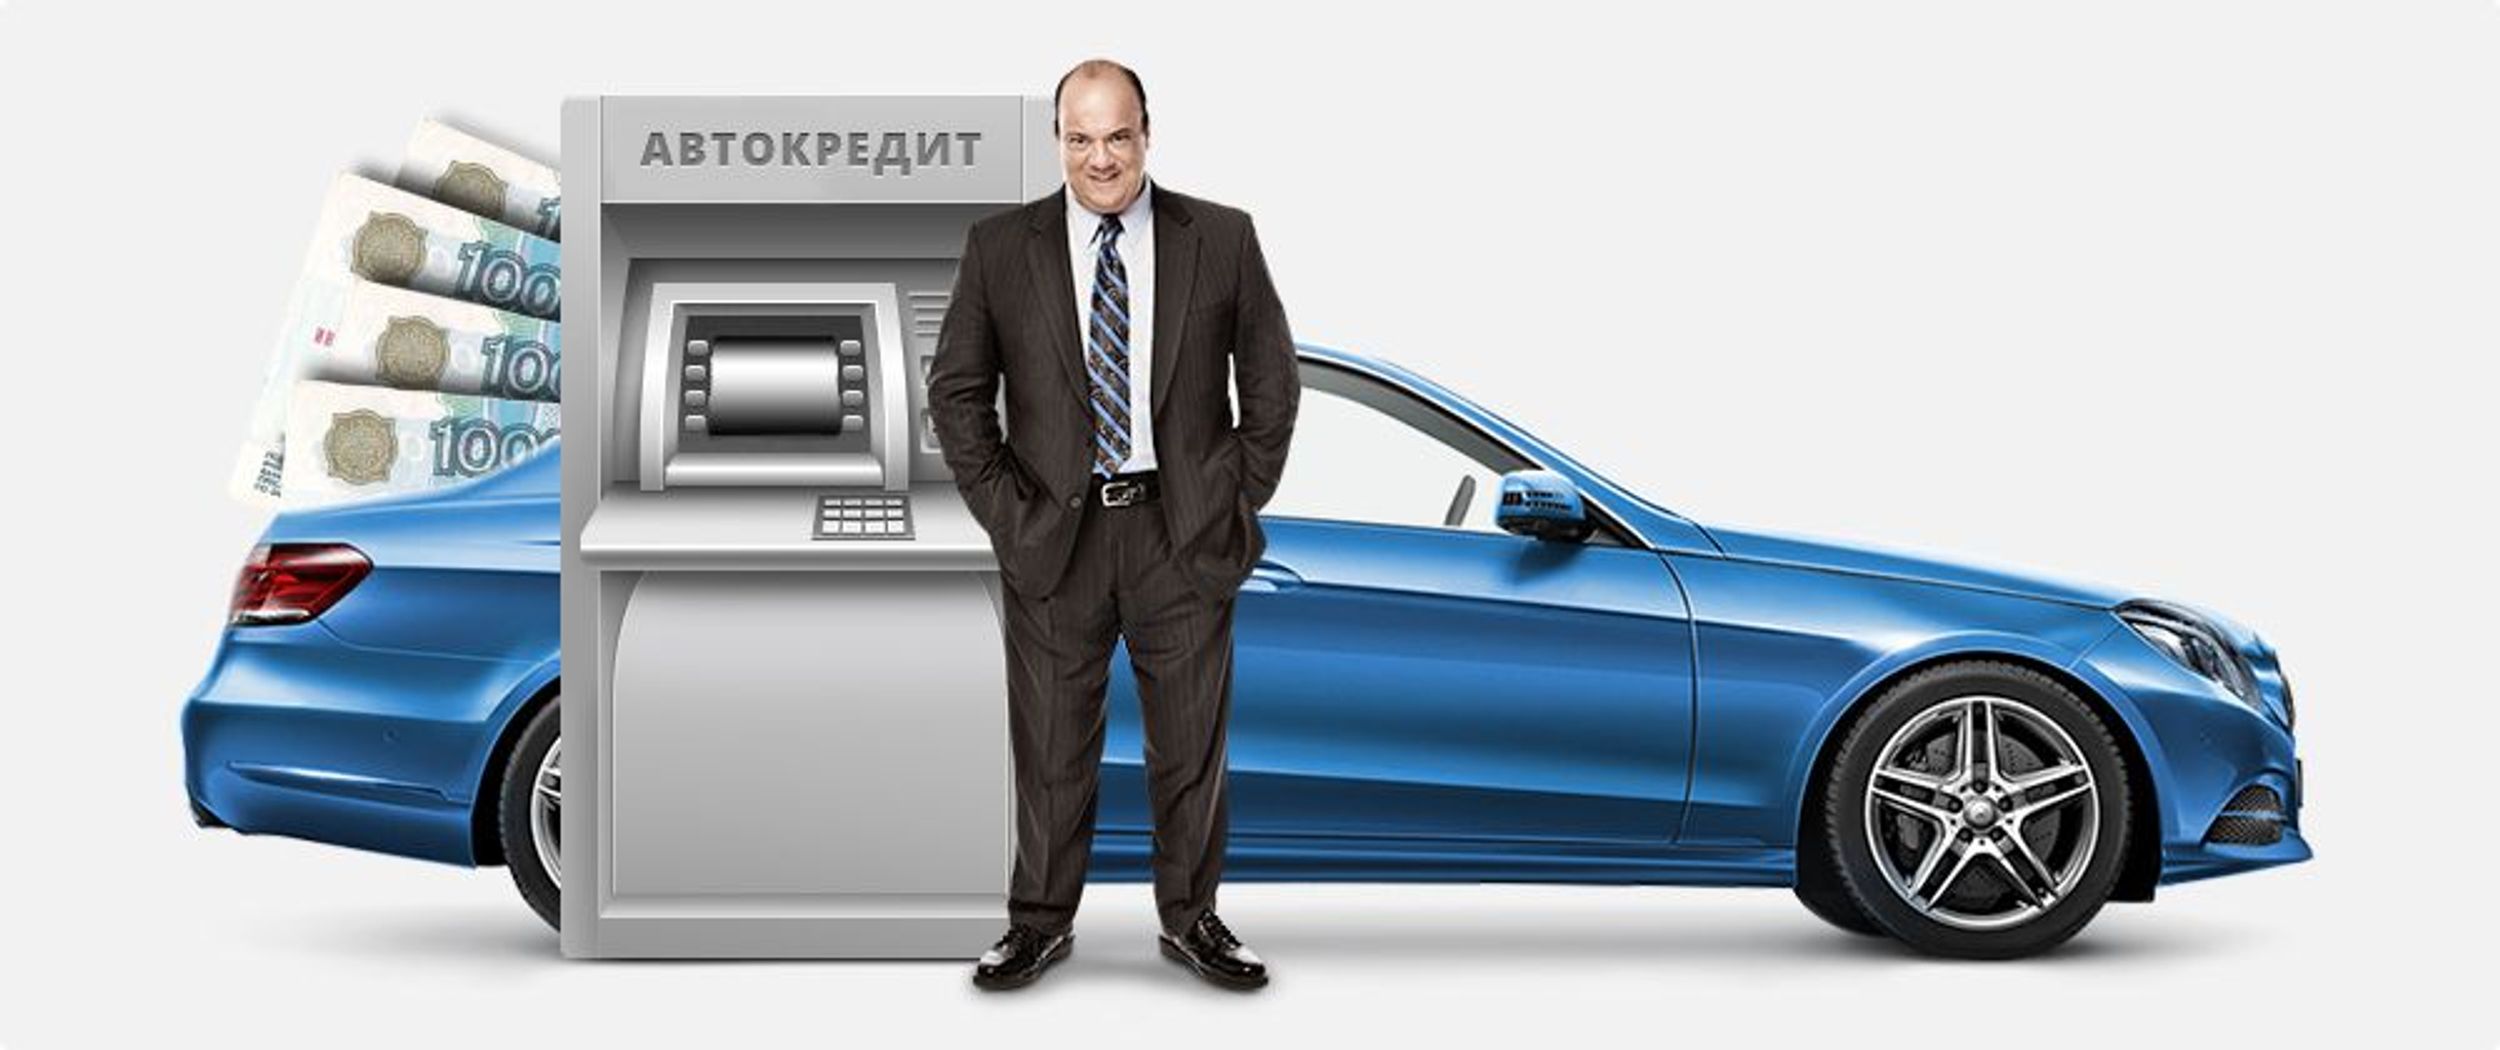 Авто в кредит от банка конфискат займы в ульяновске на карте